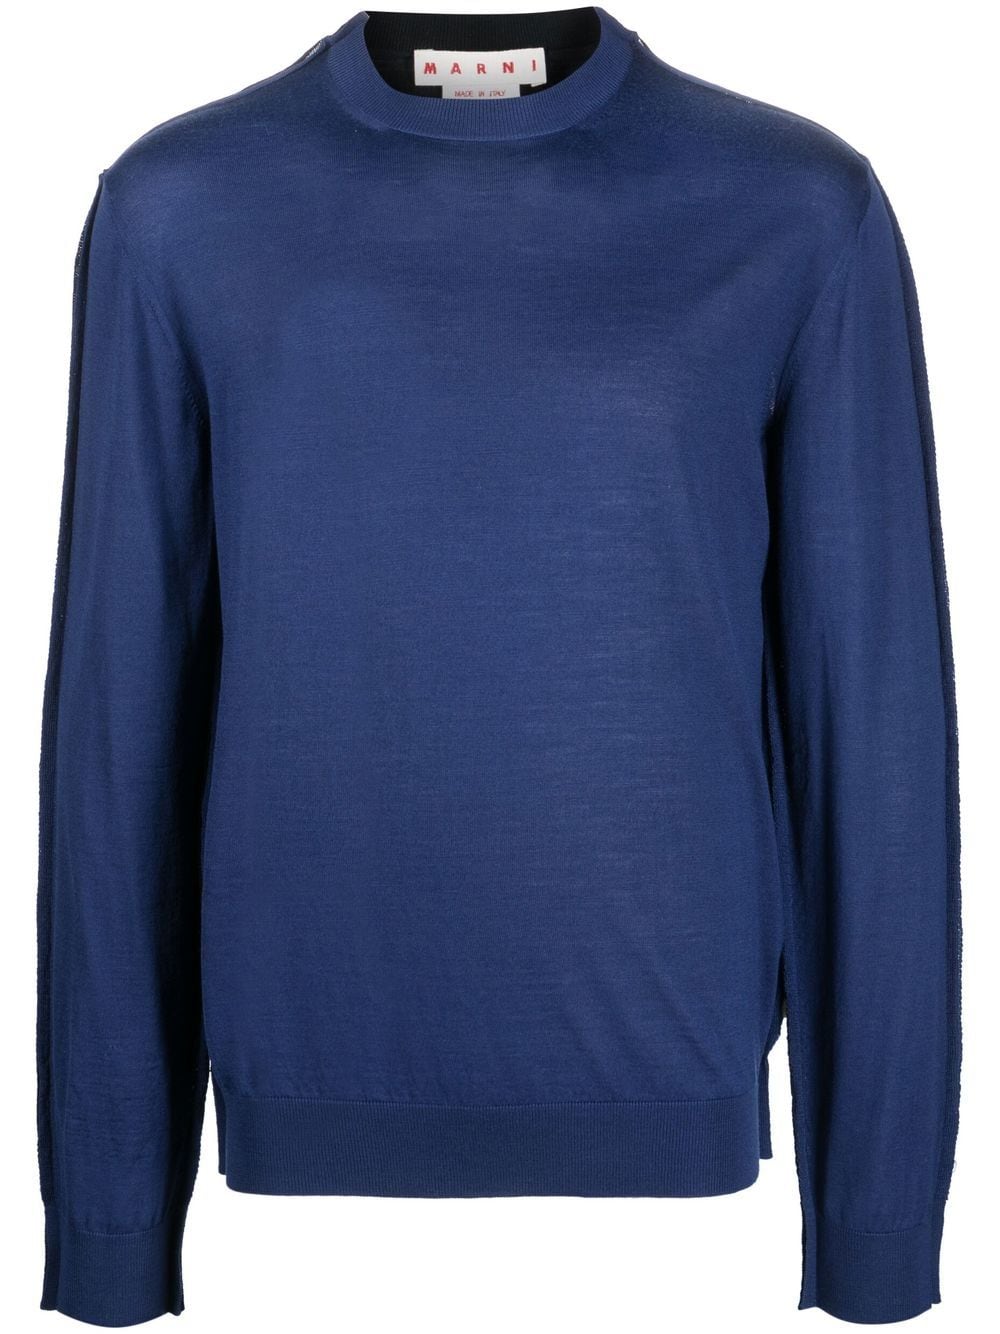 Marni fine-knit crew-neck sweater - Blue